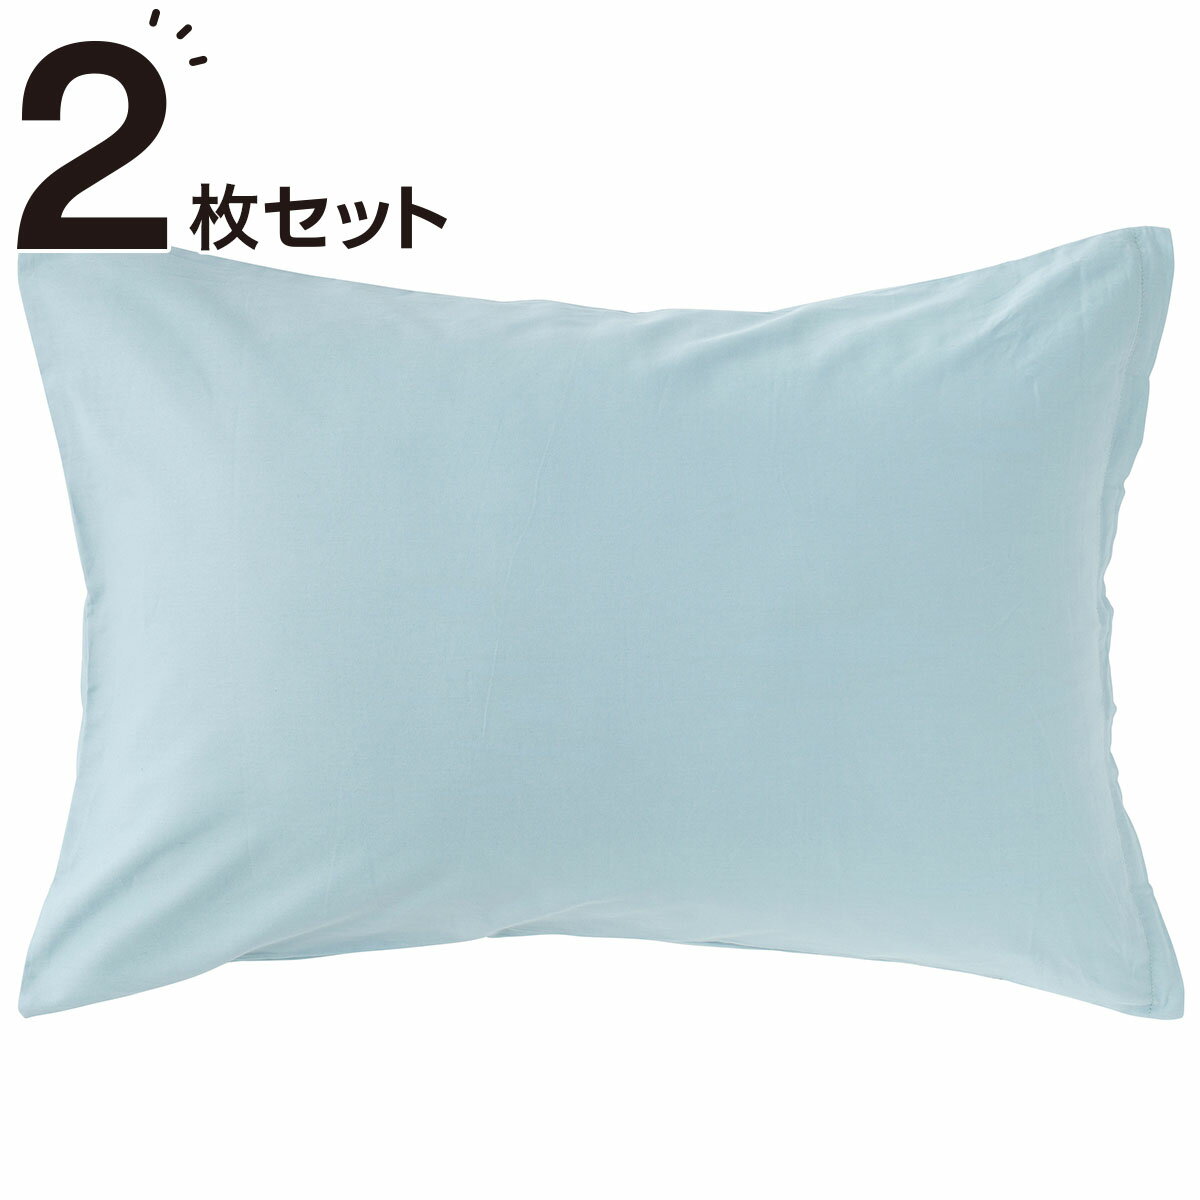 ニトリの枕カバー 2枚セット(パレットV2 TBL2)   【1年保証】(布団・寝具)